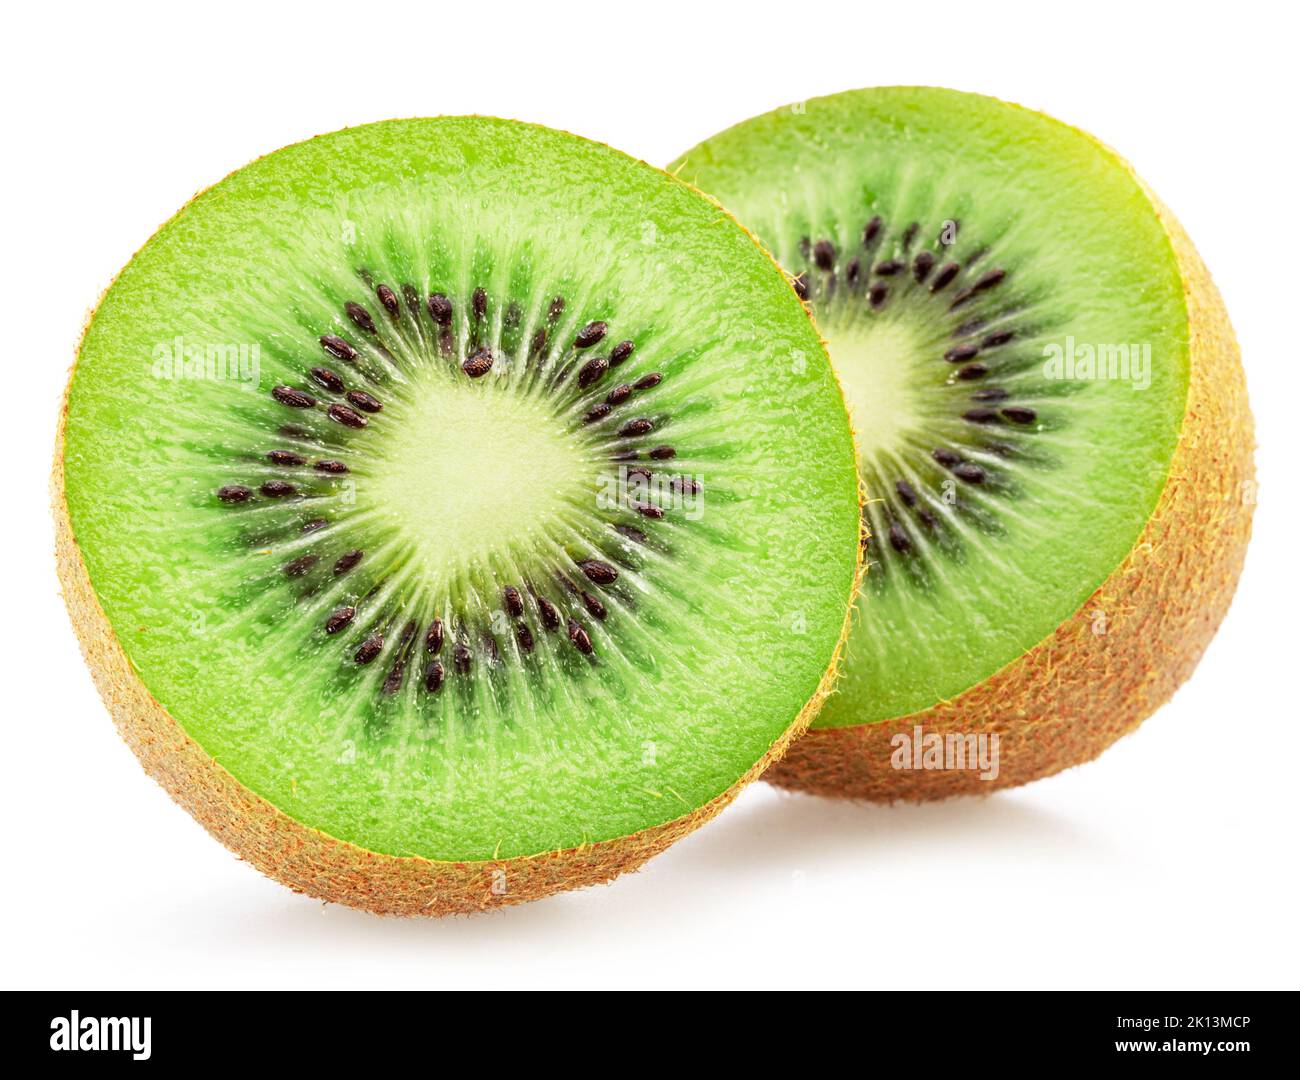 Kiwi fruit slices isolated on white background. Stock Photo